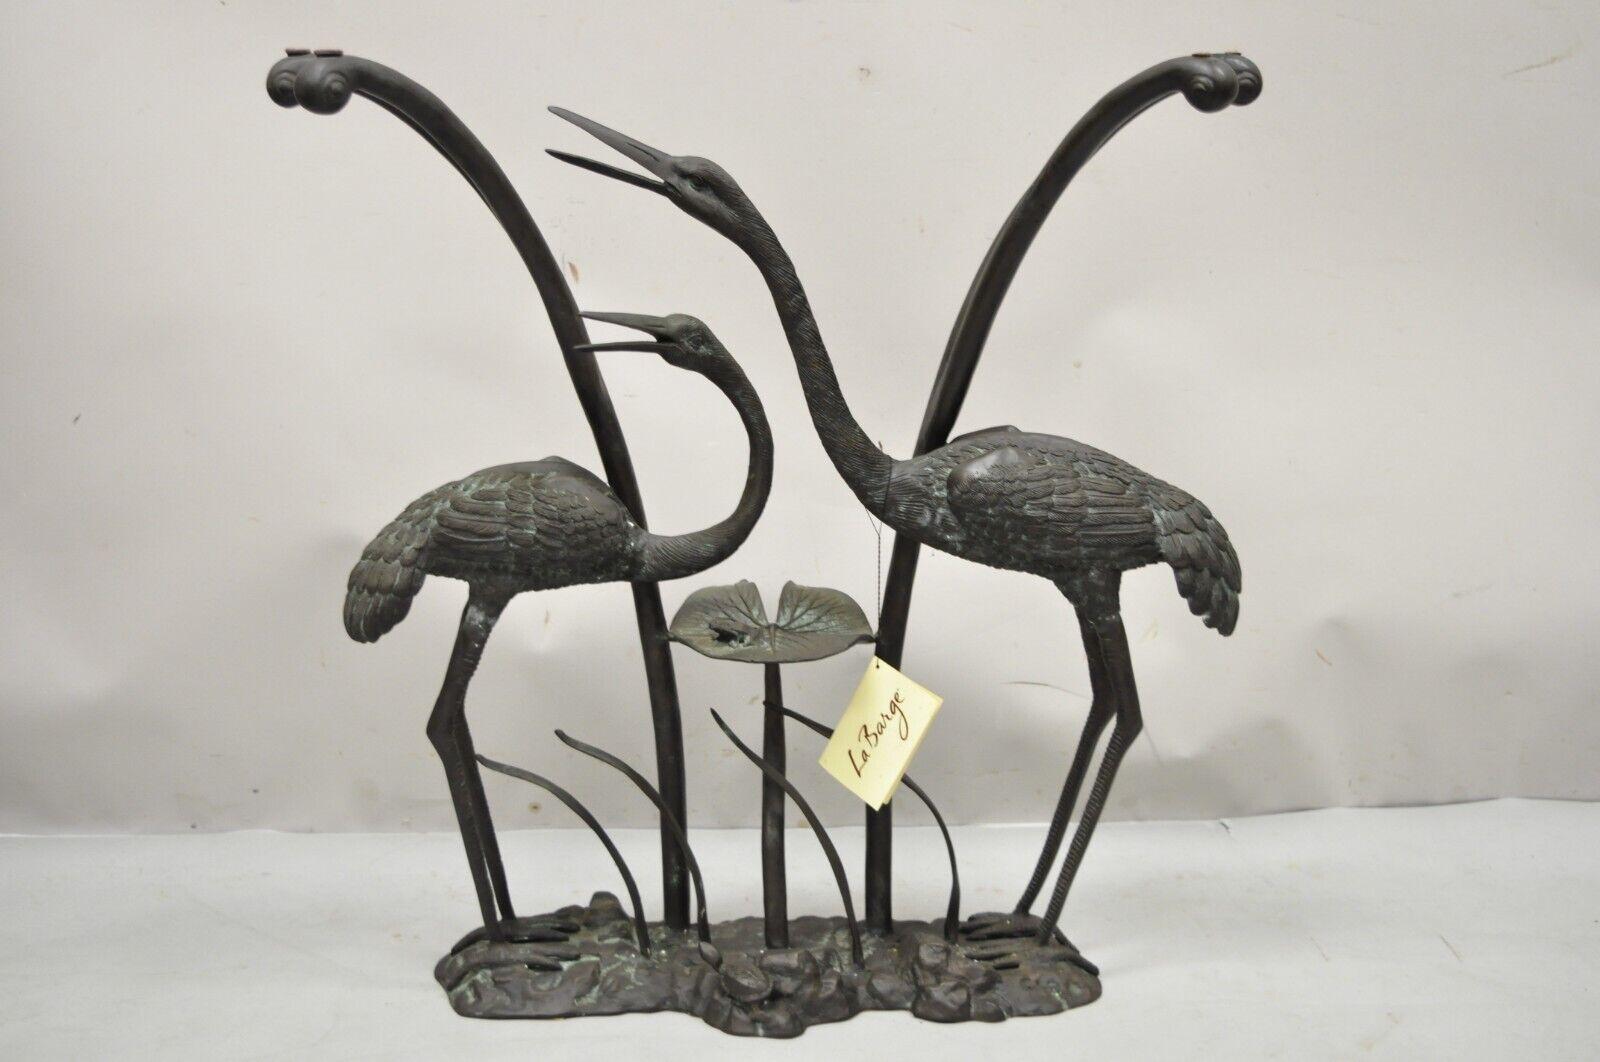 Labarge bronze grue oiseau nénuphar verre dessus console canapé table hall. L'article présente une base en bronze moulé avec des grues et une grenouille sur un nénuphar, un plateau en verre façonné, une patine souhaitable pour le métal. Vers 1980.